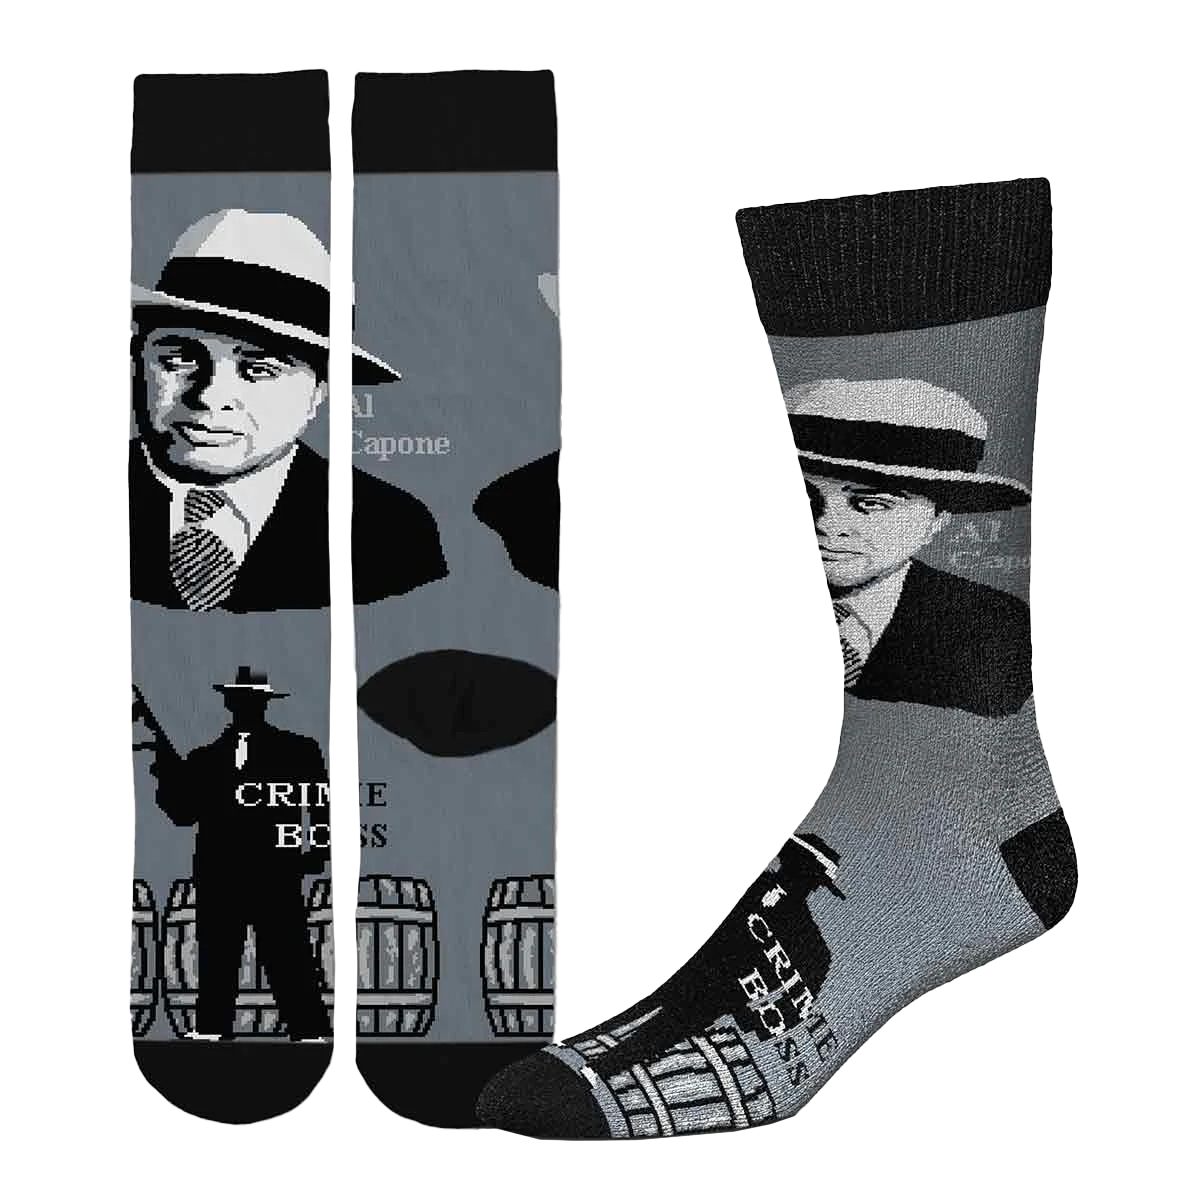 Al Capone - Historical Selfie Socks